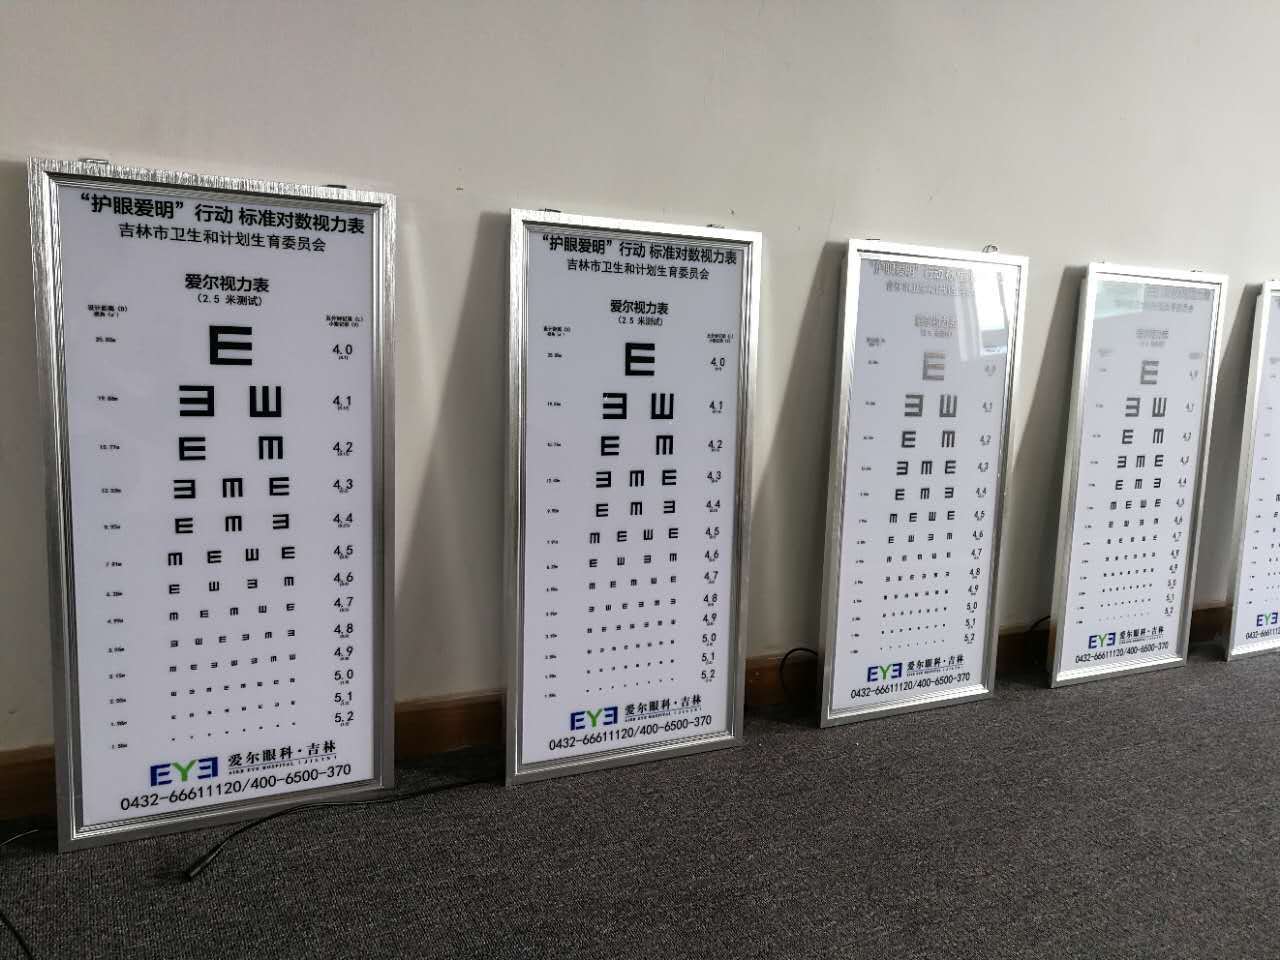 led视力表灯箱标准医用儿童卡通幼儿园2.5米5米挂图测试眼睛灯箱示例图2